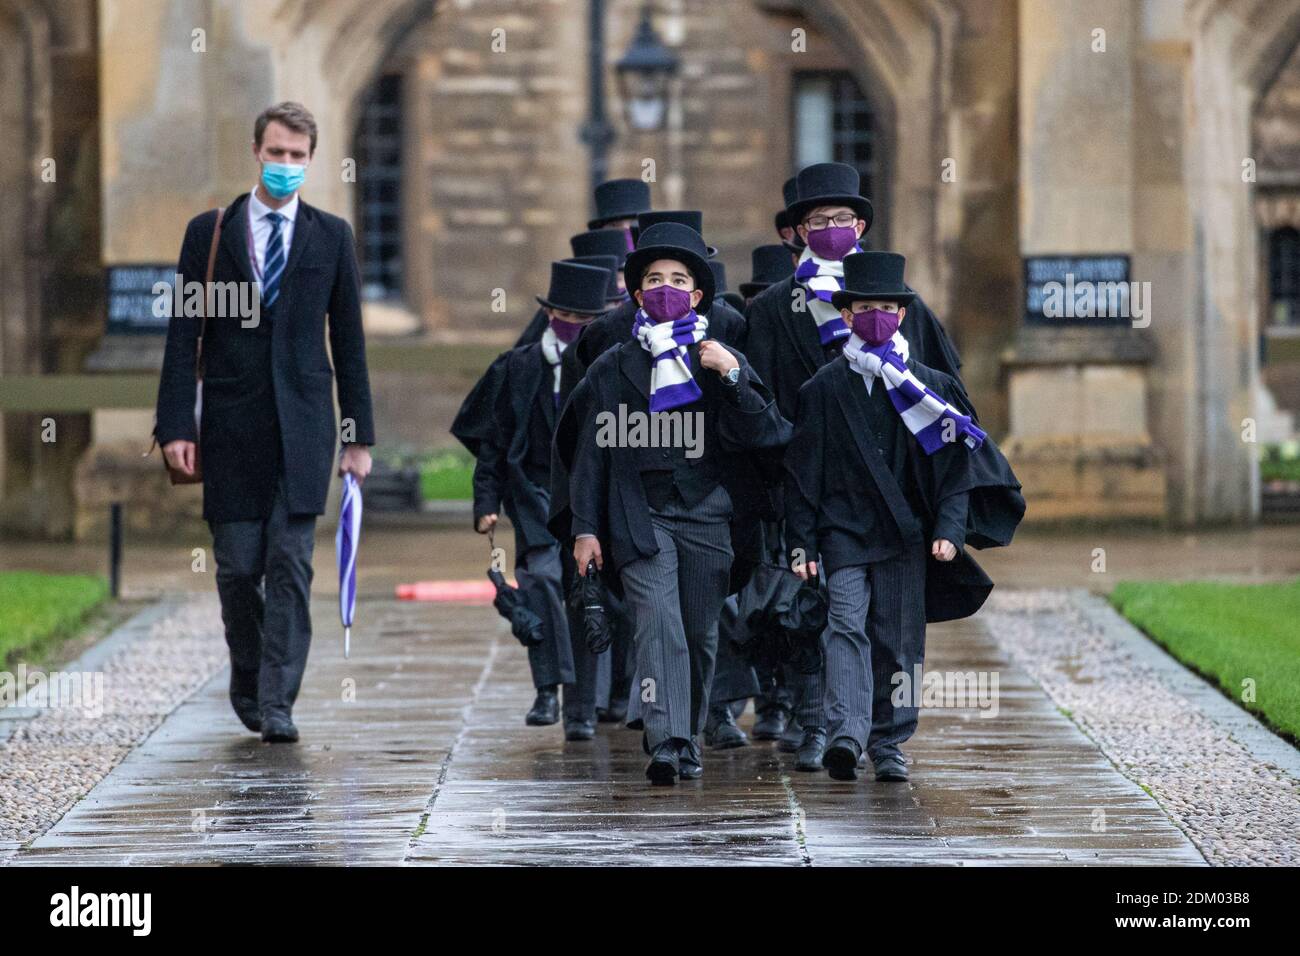 Bild vom 12. Dezember 2020 zeigt den King's Choir auf dem Weg in die King's College Chapel an der Cambridge University am Samstagnachmittag, um den weltberühmten Weihnachtslieddienst im Fernsehen aufzunehmen, der in diesem Jahr keine Gemeinde hatte. Die Choristen marschierten in die King's College Chapel an der Universität Cambridge, um den weltbekannten Weihnachtslieddienst zu dokumentieren, der in diesem Jahr zum ersten Mal in seiner Geschichte keine Gemeinde hatte. Die Jungen wurden in Masken gesehen, als sie gestern Nachmittag (Sa) in die Kapelle eingingen, um das Festival der neun Lektionen und Weihnachtslieder aufzunehmen. Stockfoto